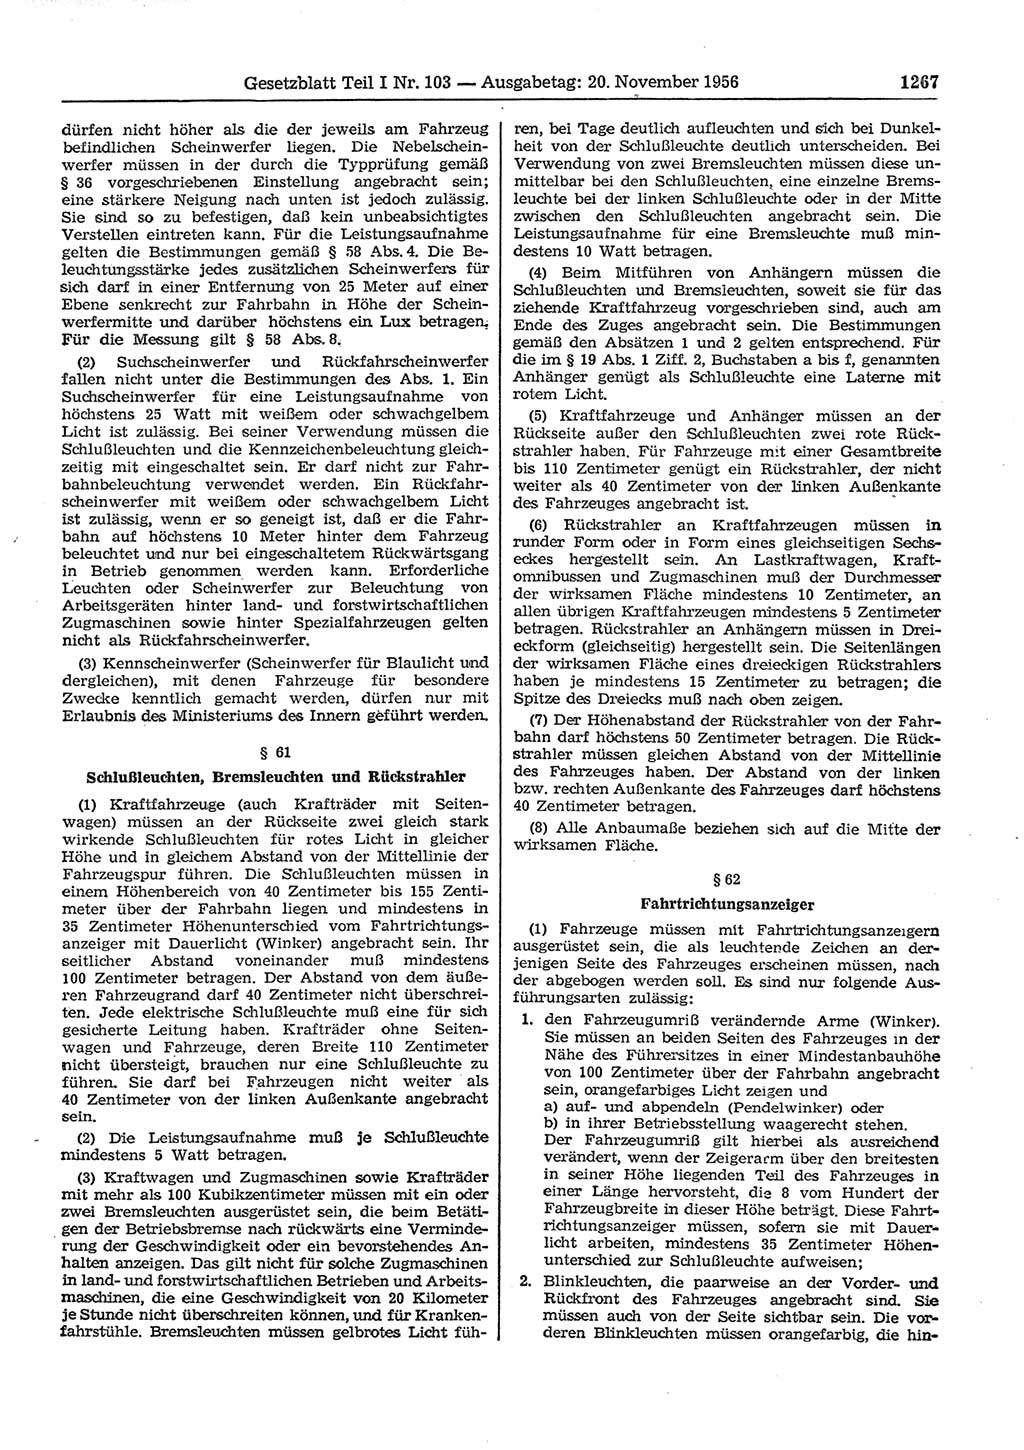 Gesetzblatt (GBl.) der Deutschen Demokratischen Republik (DDR) Teil Ⅰ 1956, Seite 1267 (GBl. DDR Ⅰ 1956, S. 1267)